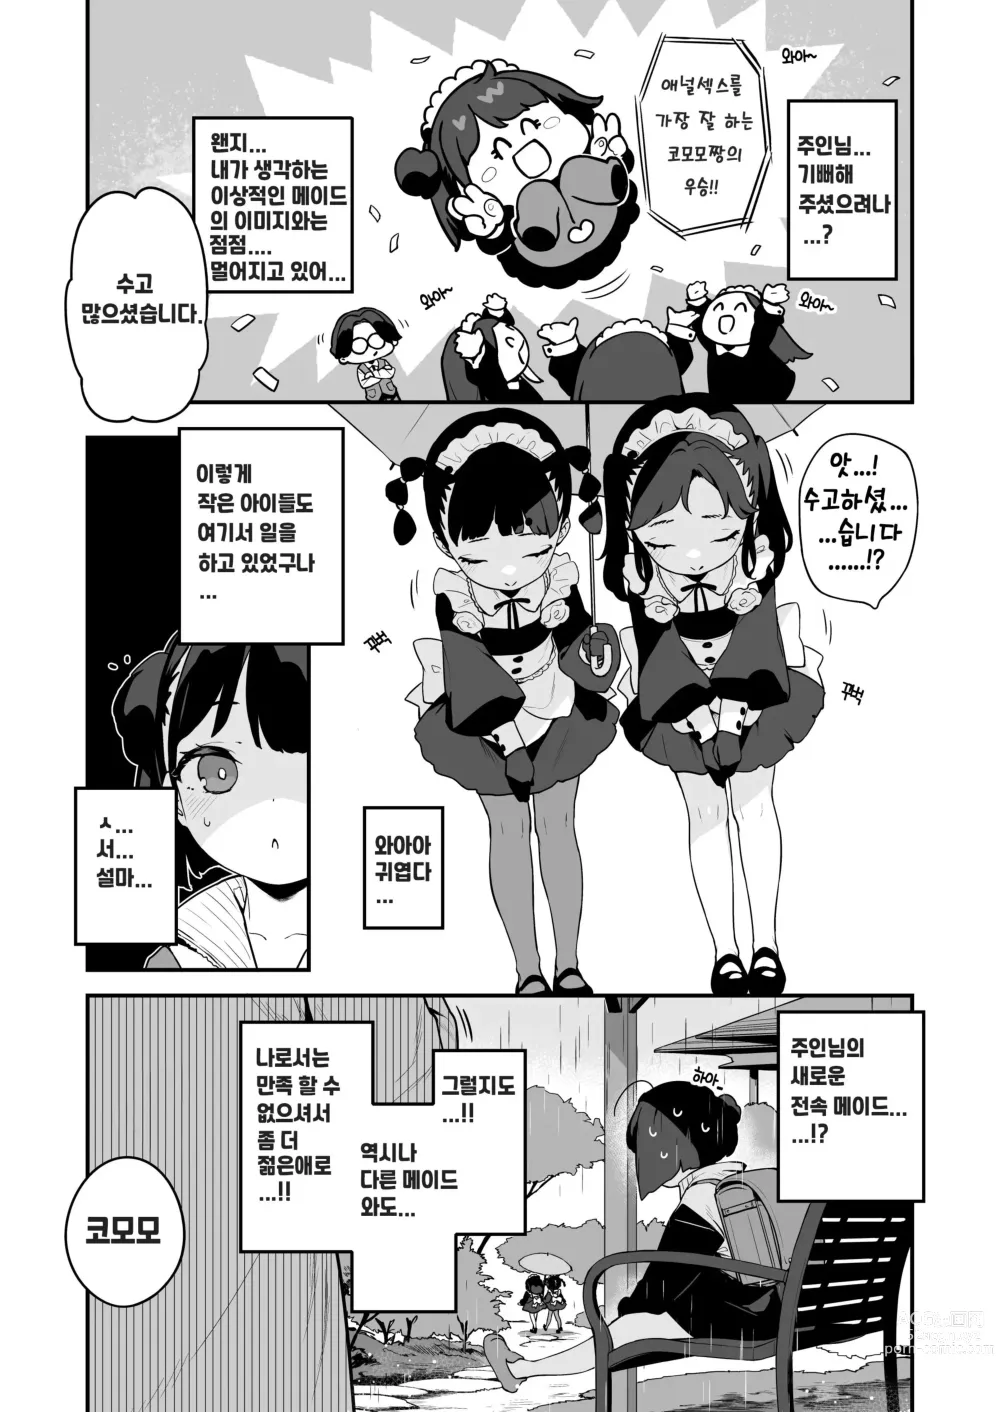 Page 28 of doujinshi Komomo wa Goshujinsama Senyo no Ryoana Nikubenki Loli Maid